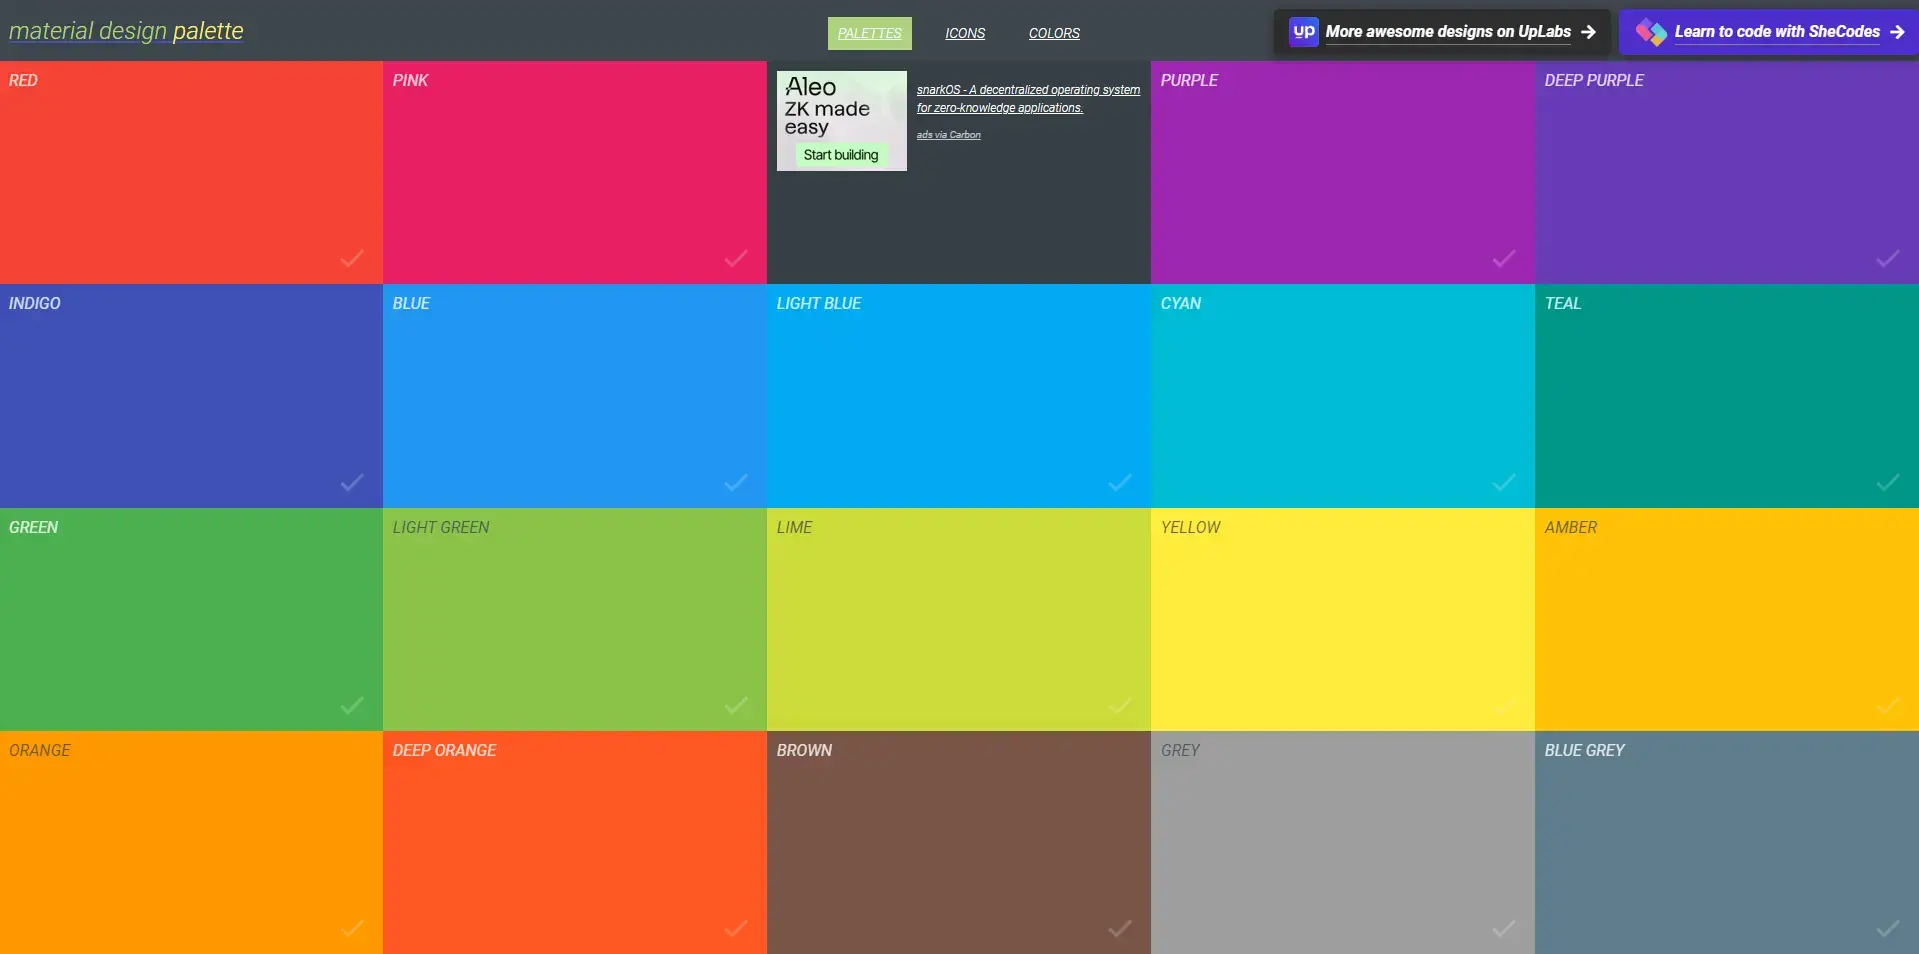 Blogduwebdesign outils design generateurs palettes couleurs en ligne material design palette